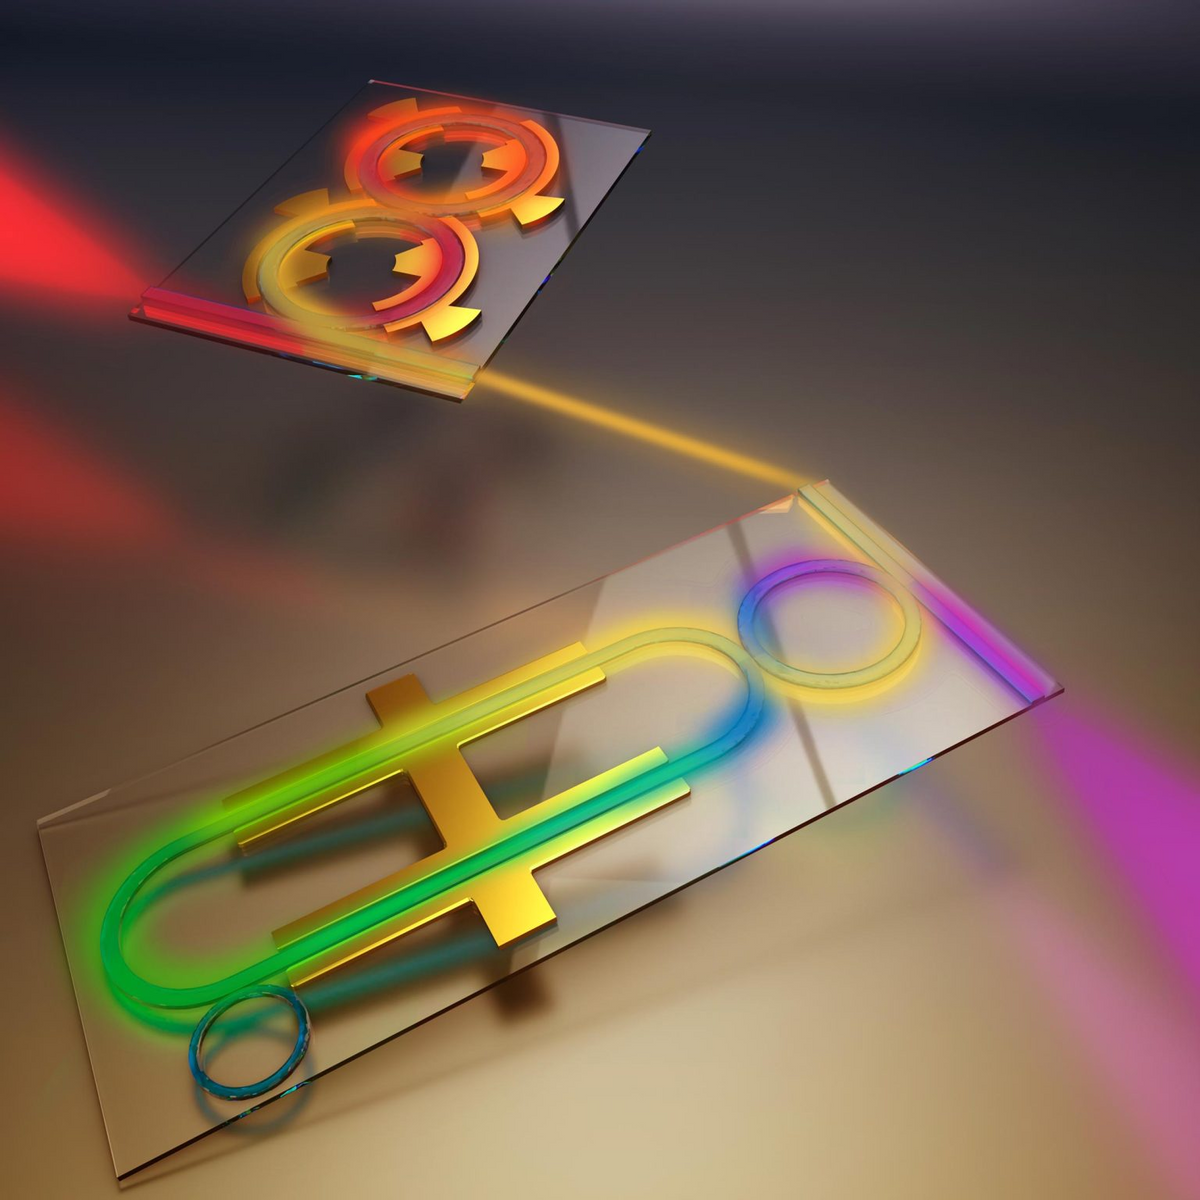 改变片上光子学的颜色，为下一代量子计算机和网络提供动力